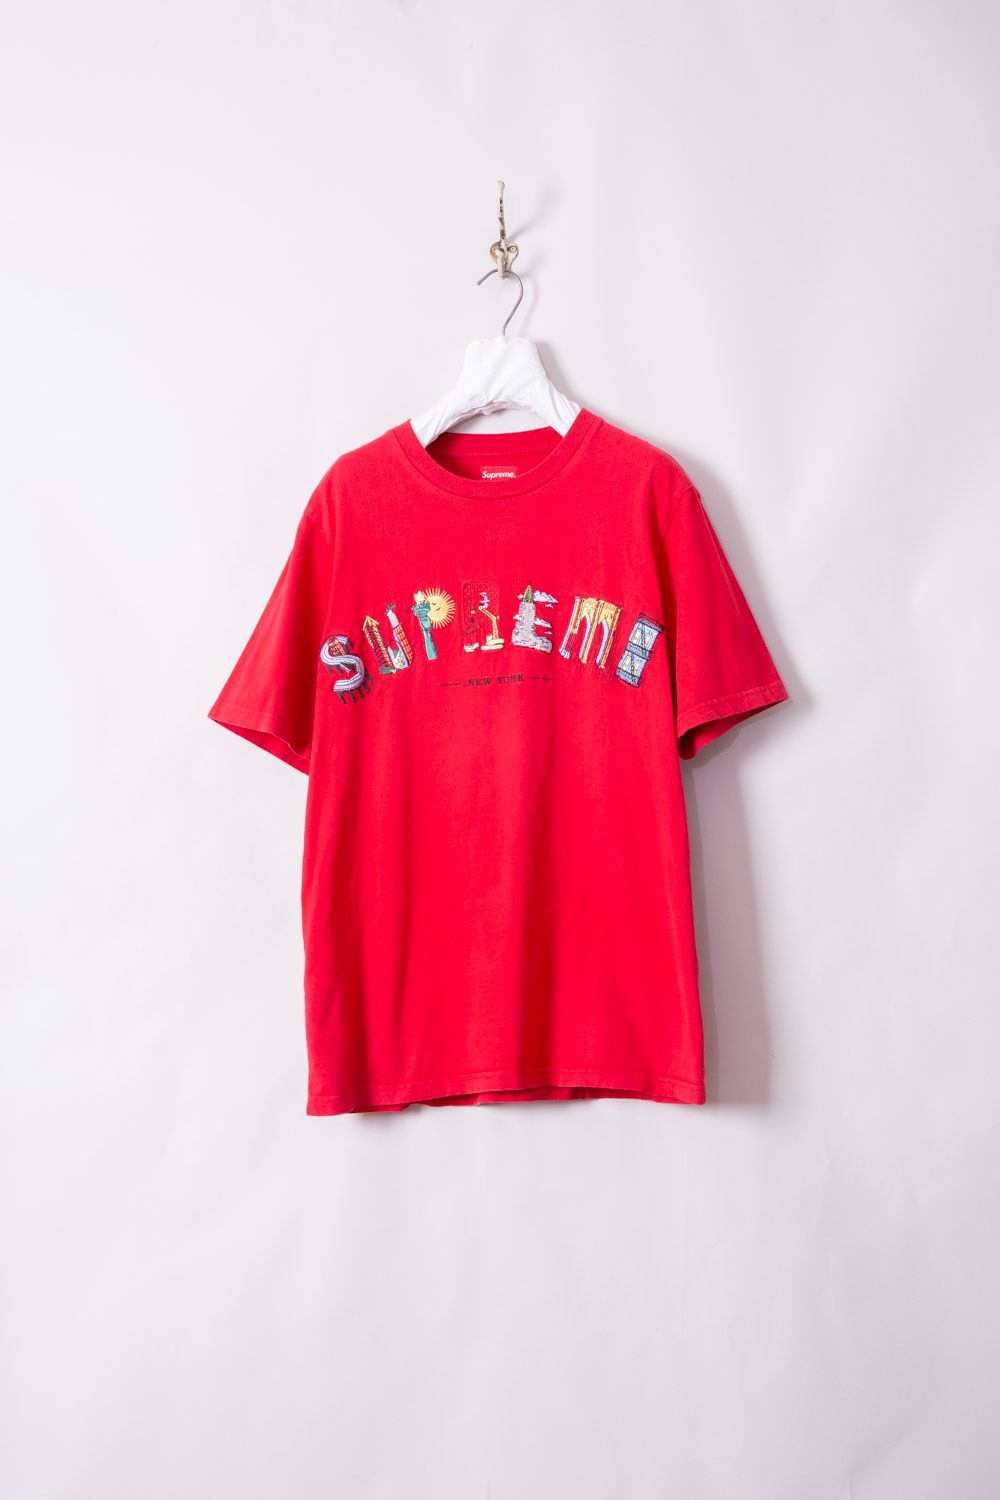 Supreme　シュプリーム　City Arc Tee　Tシャツ 刺繍アーチロゴ